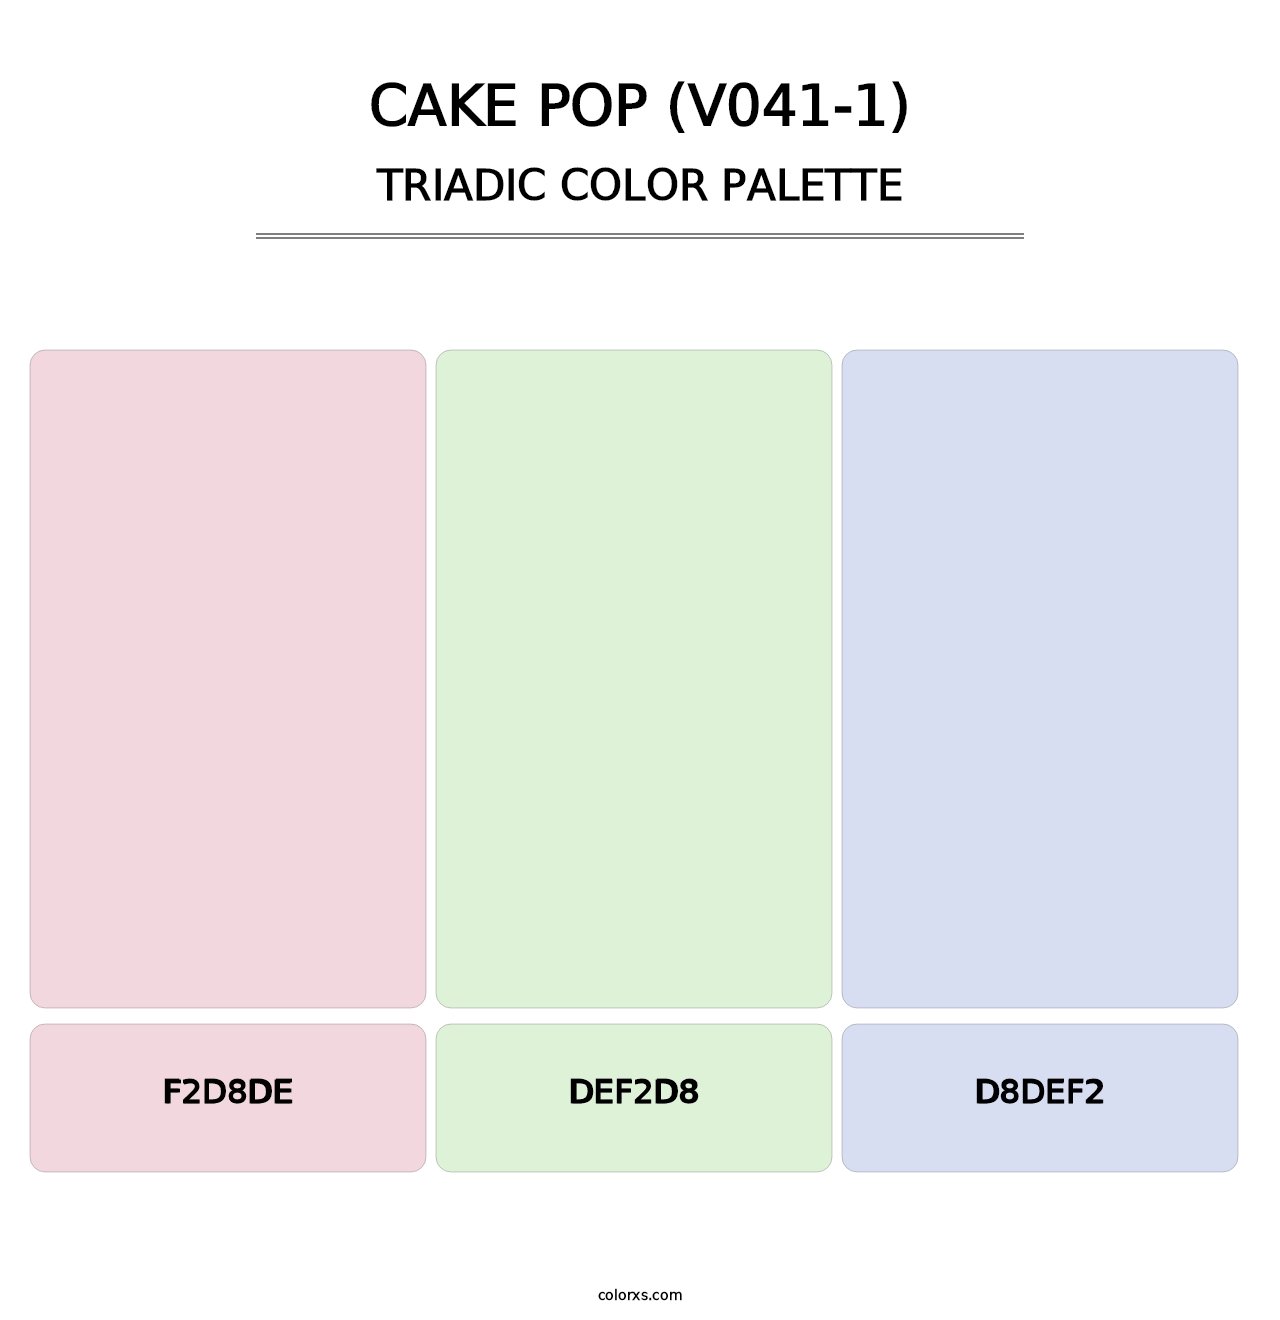 Cake Pop (V041-1) - Triadic Color Palette